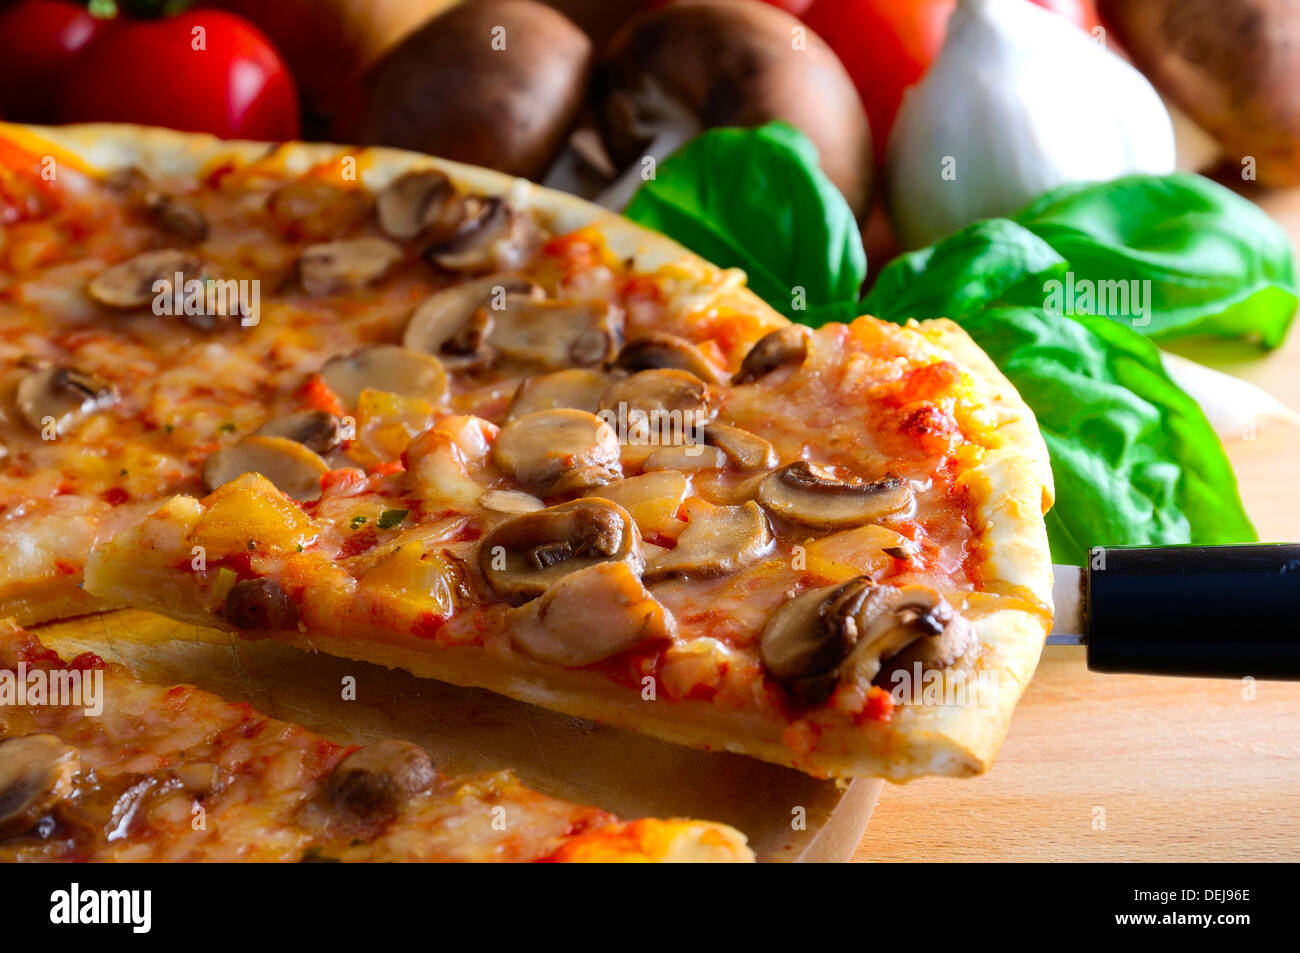 slice of traditional homemade italian pizza Stock Photo